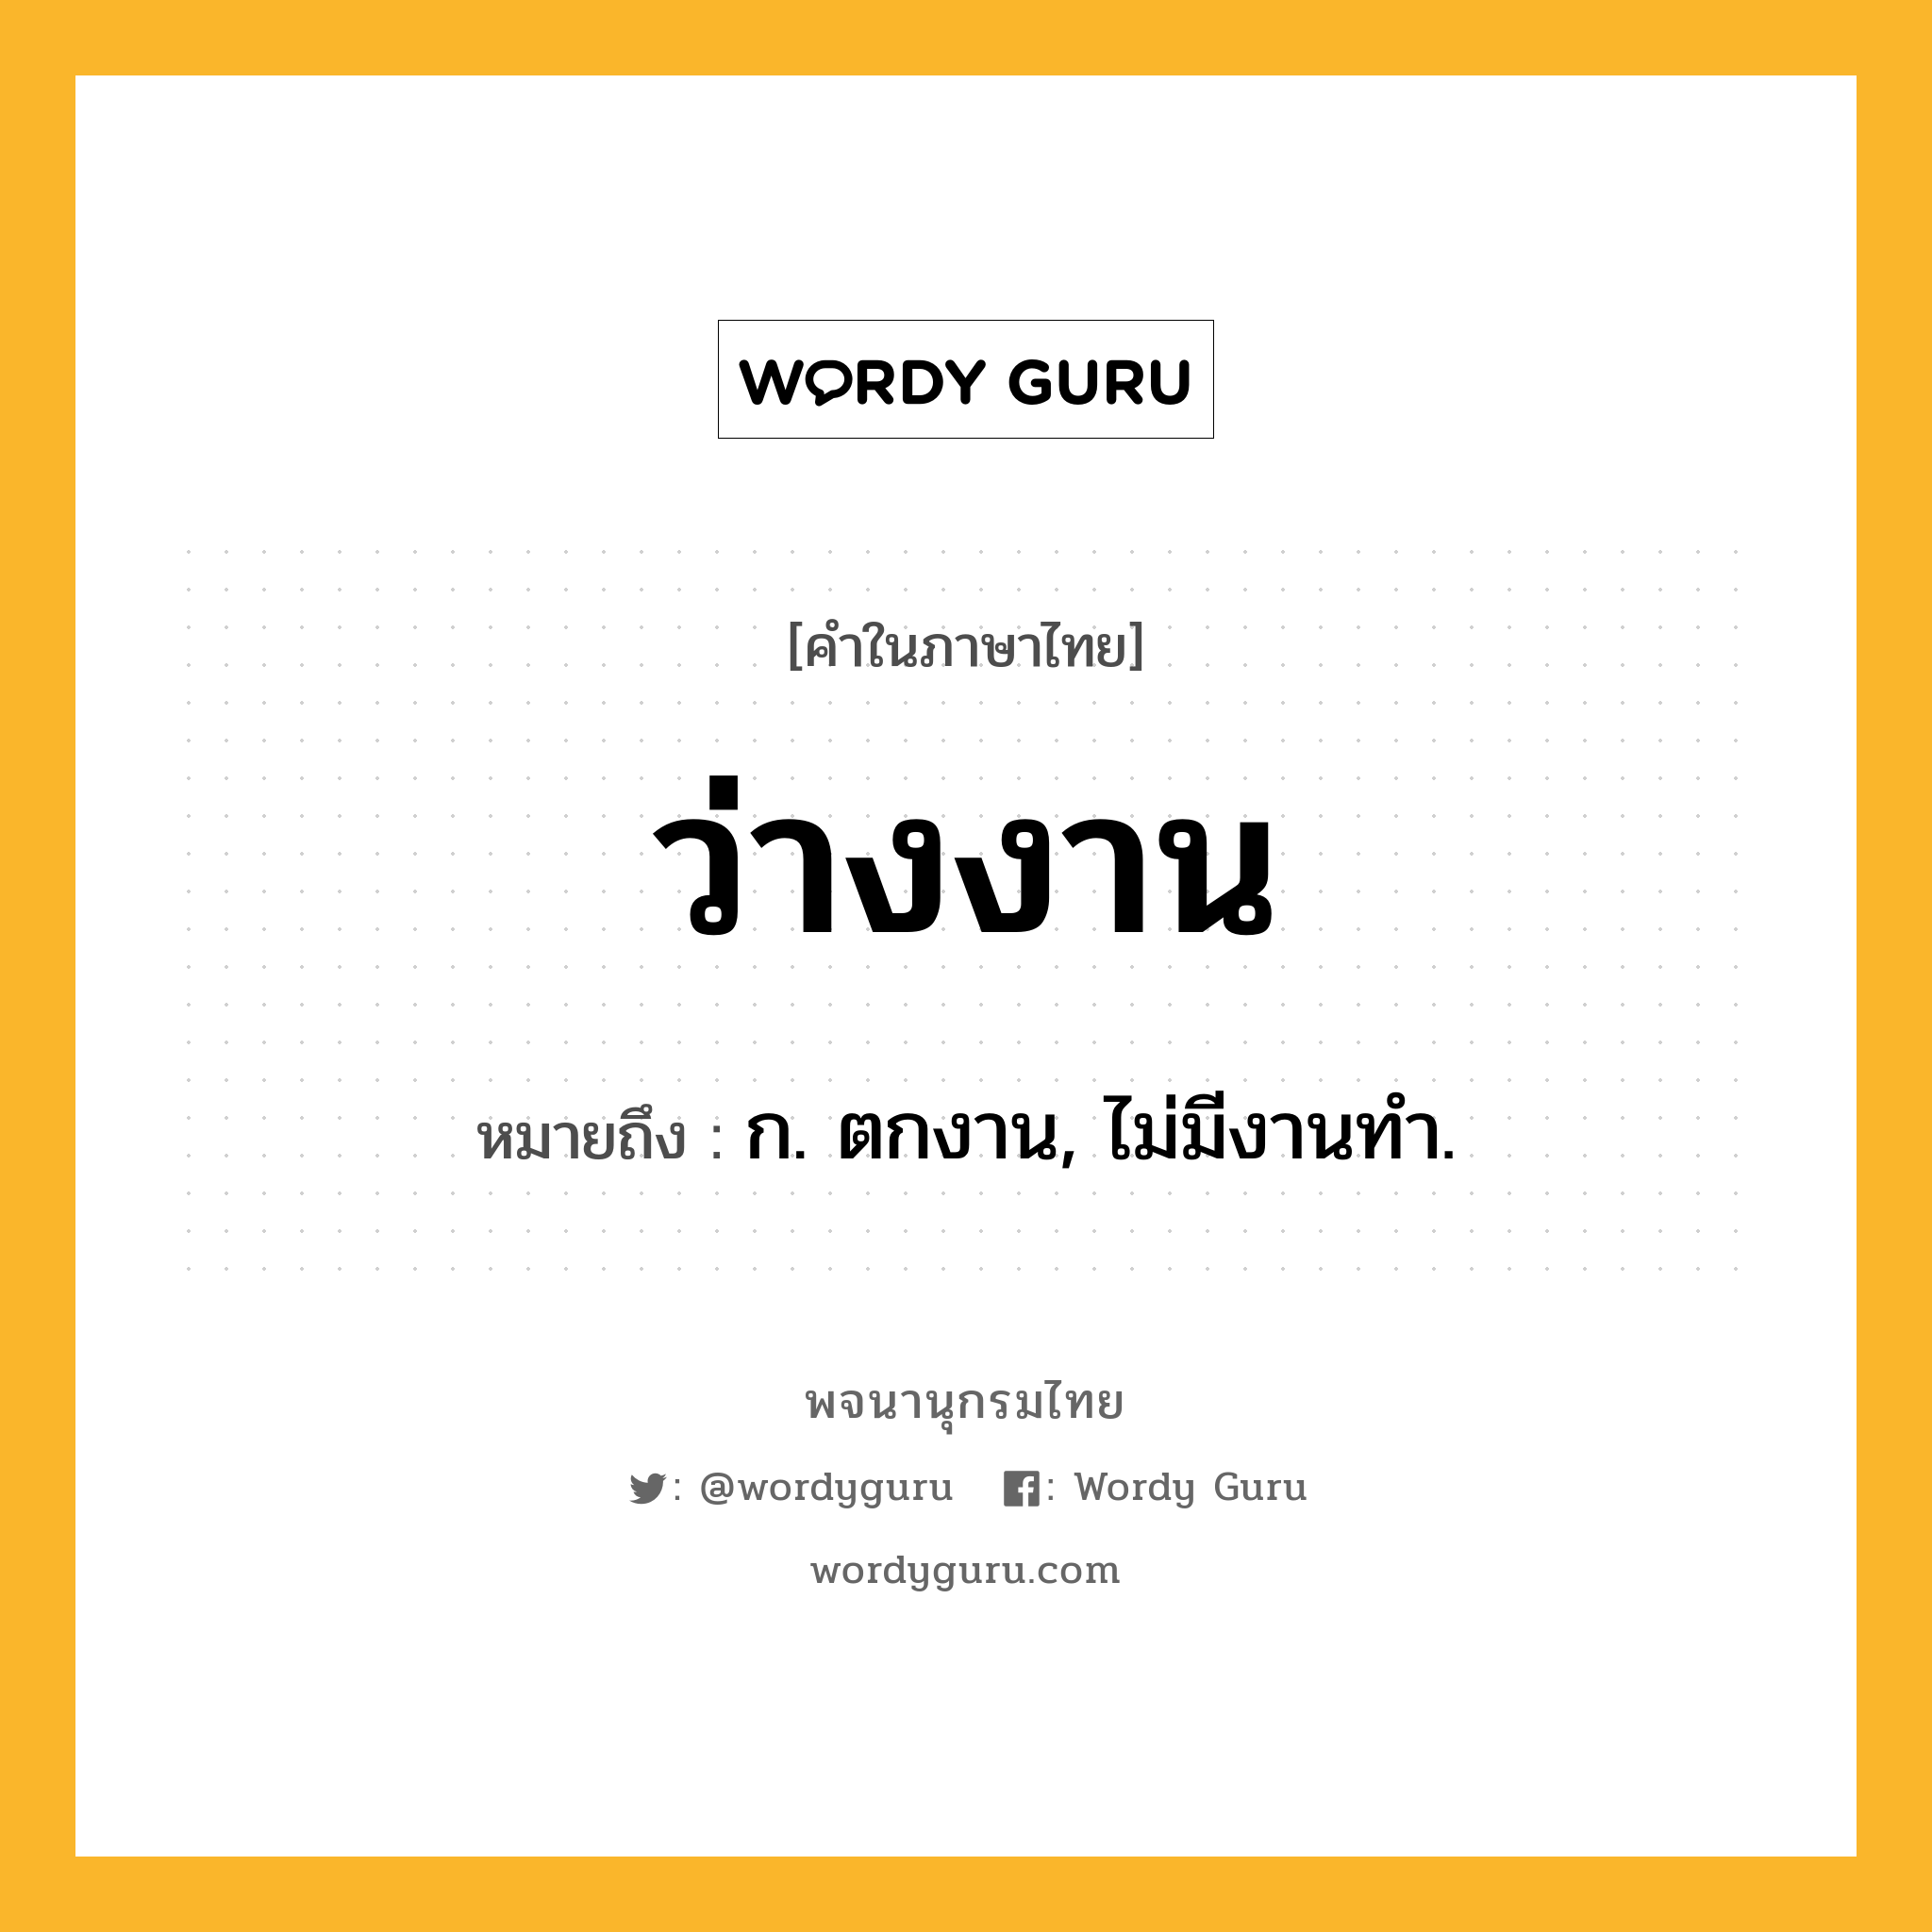 ว่างงาน หมายถึงอะไร?, คำในภาษาไทย ว่างงาน หมายถึง ก. ตกงาน, ไม่มีงานทํา.